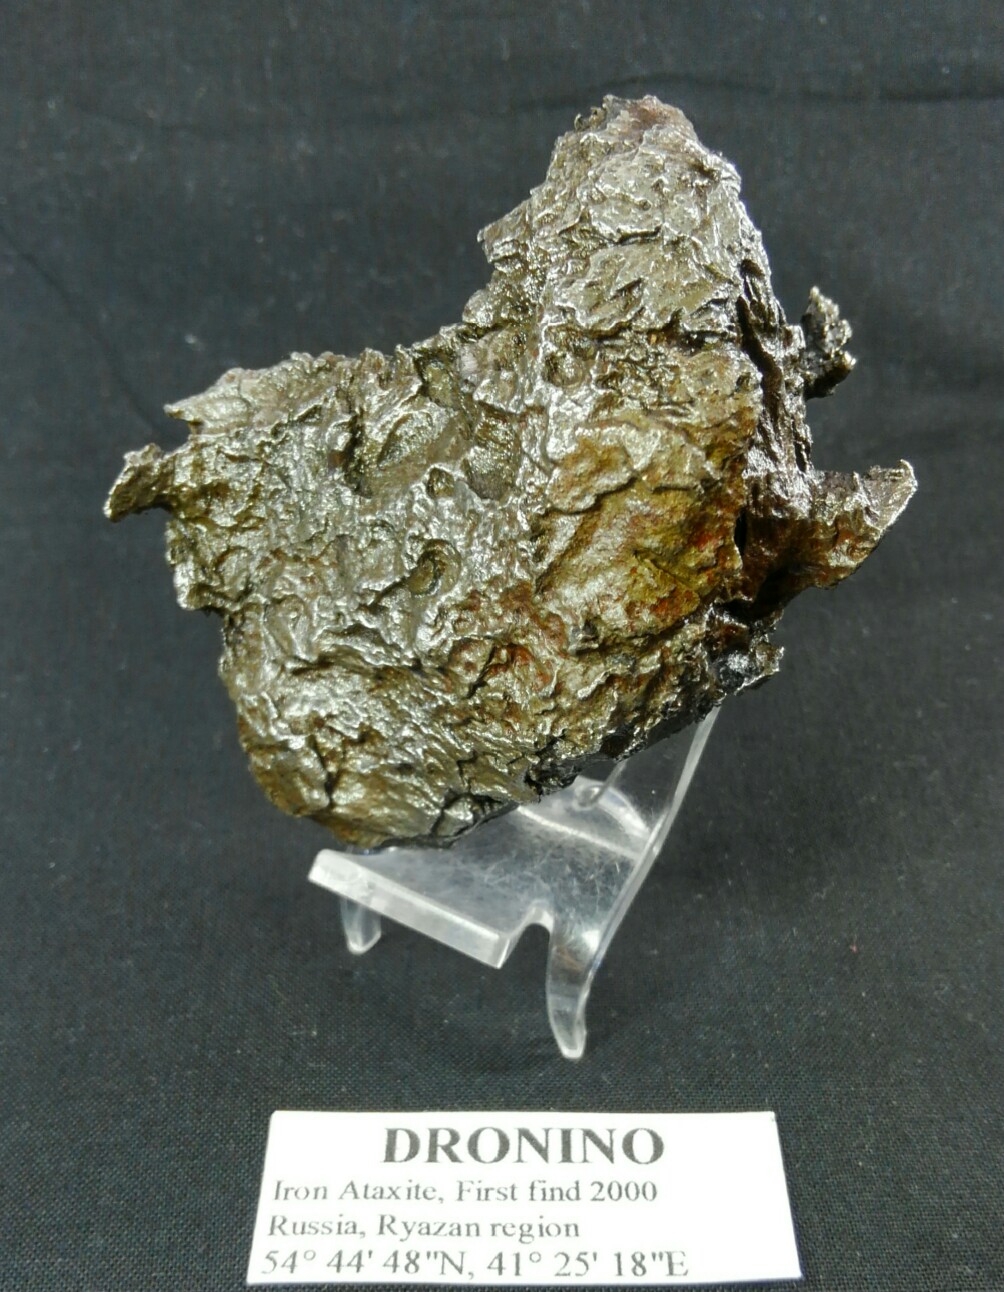 鉄隕石 ドロニノ隕石 130g 両面エッチング、外殻皮付き - インテリア小物